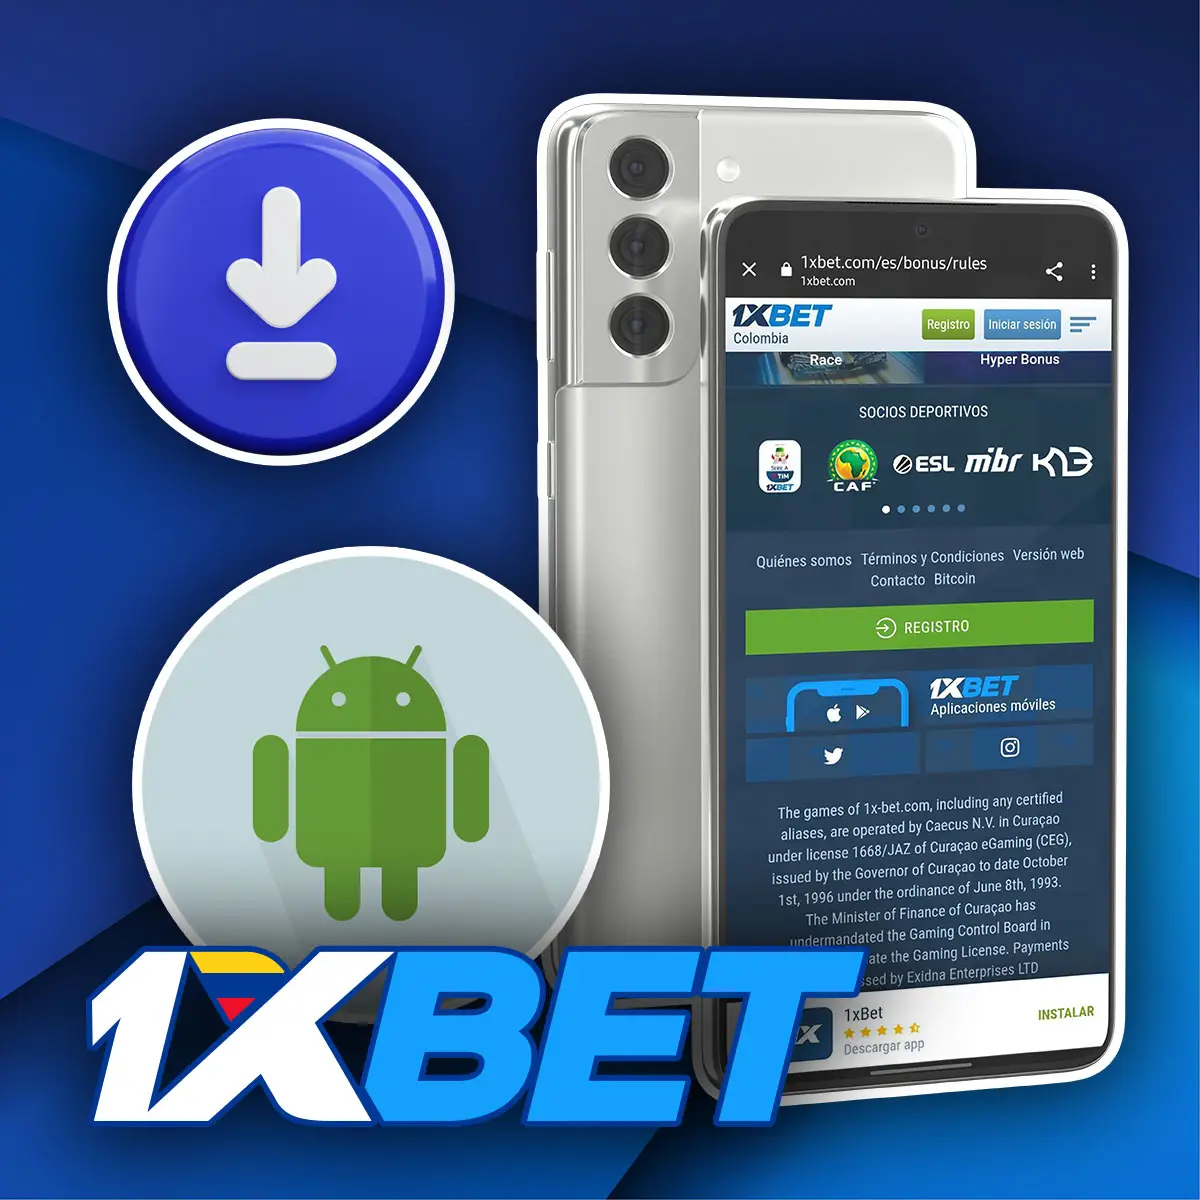 1xbet app móvil para Android